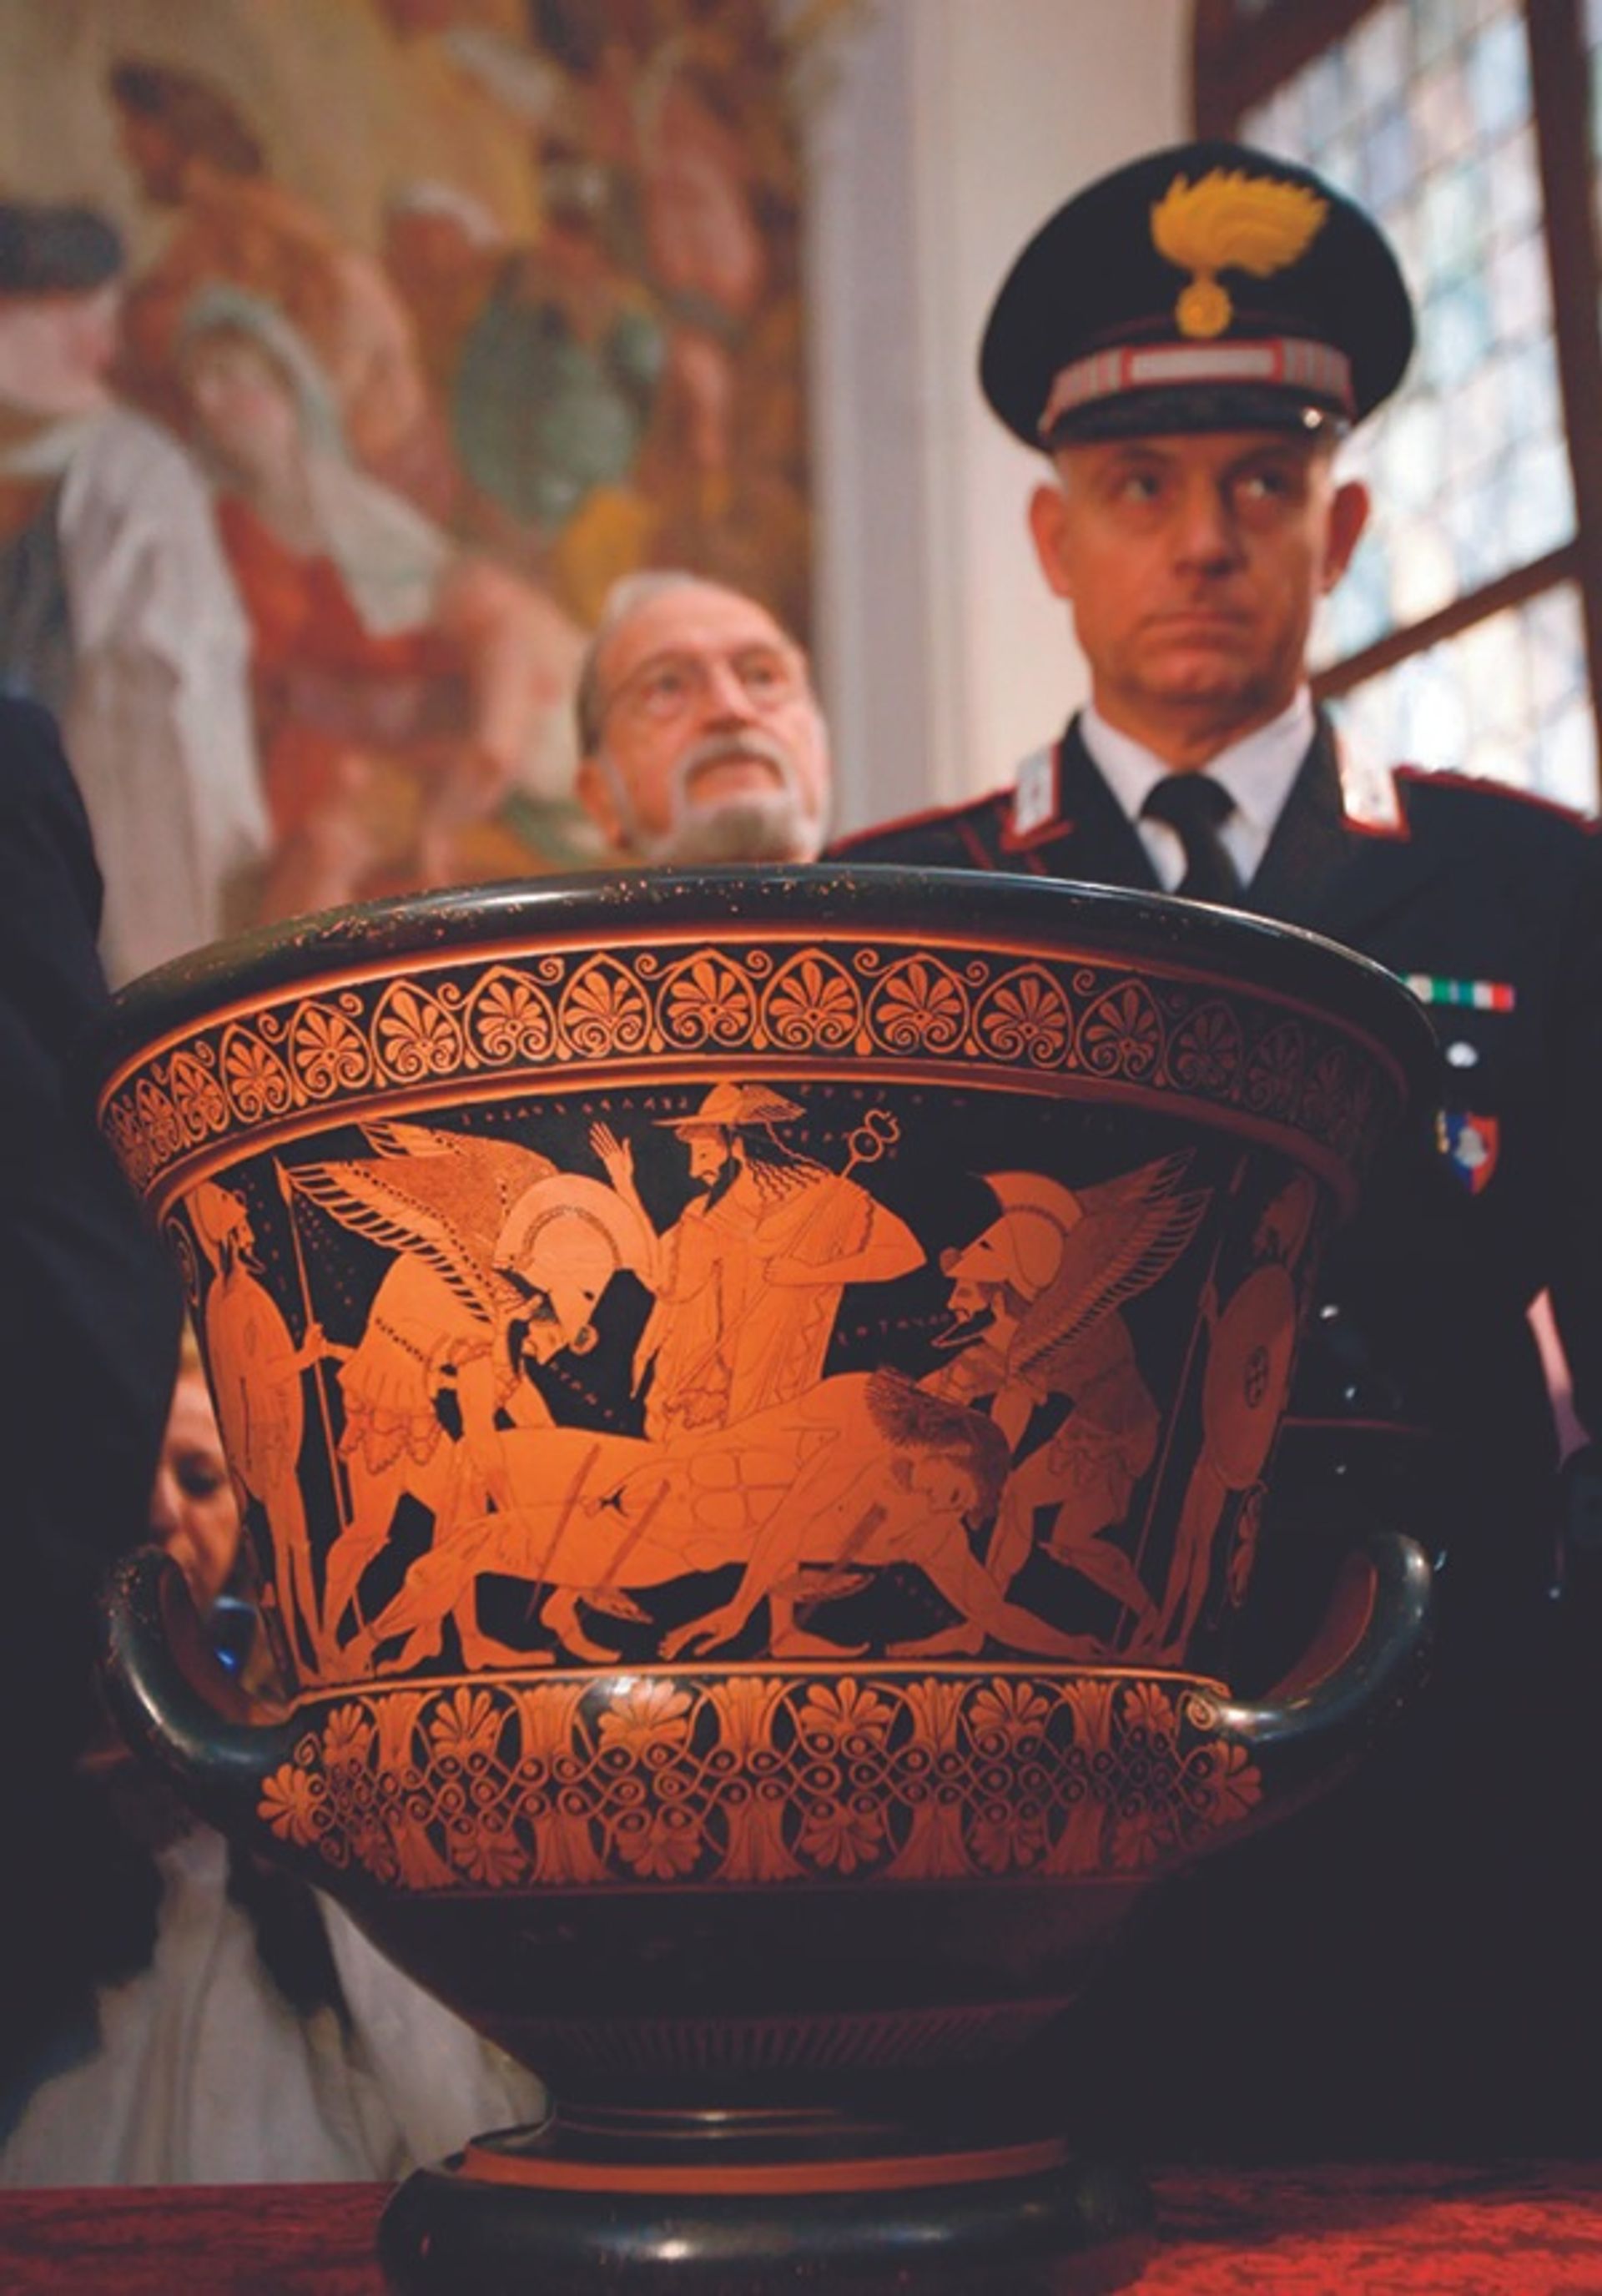 ה-Euphronios Krater האטרוסקי (515BC) הוחזר לאיטליה בשנת 2008 על ידי מוזיאון המטרופוליטן לאמנות; המונסיניור מישל באסו היה בעל עותק לכאורה של האגרטל היווני היקר והשנוי במחלוקת

צילום: דריו פינאטלי/רויטרס